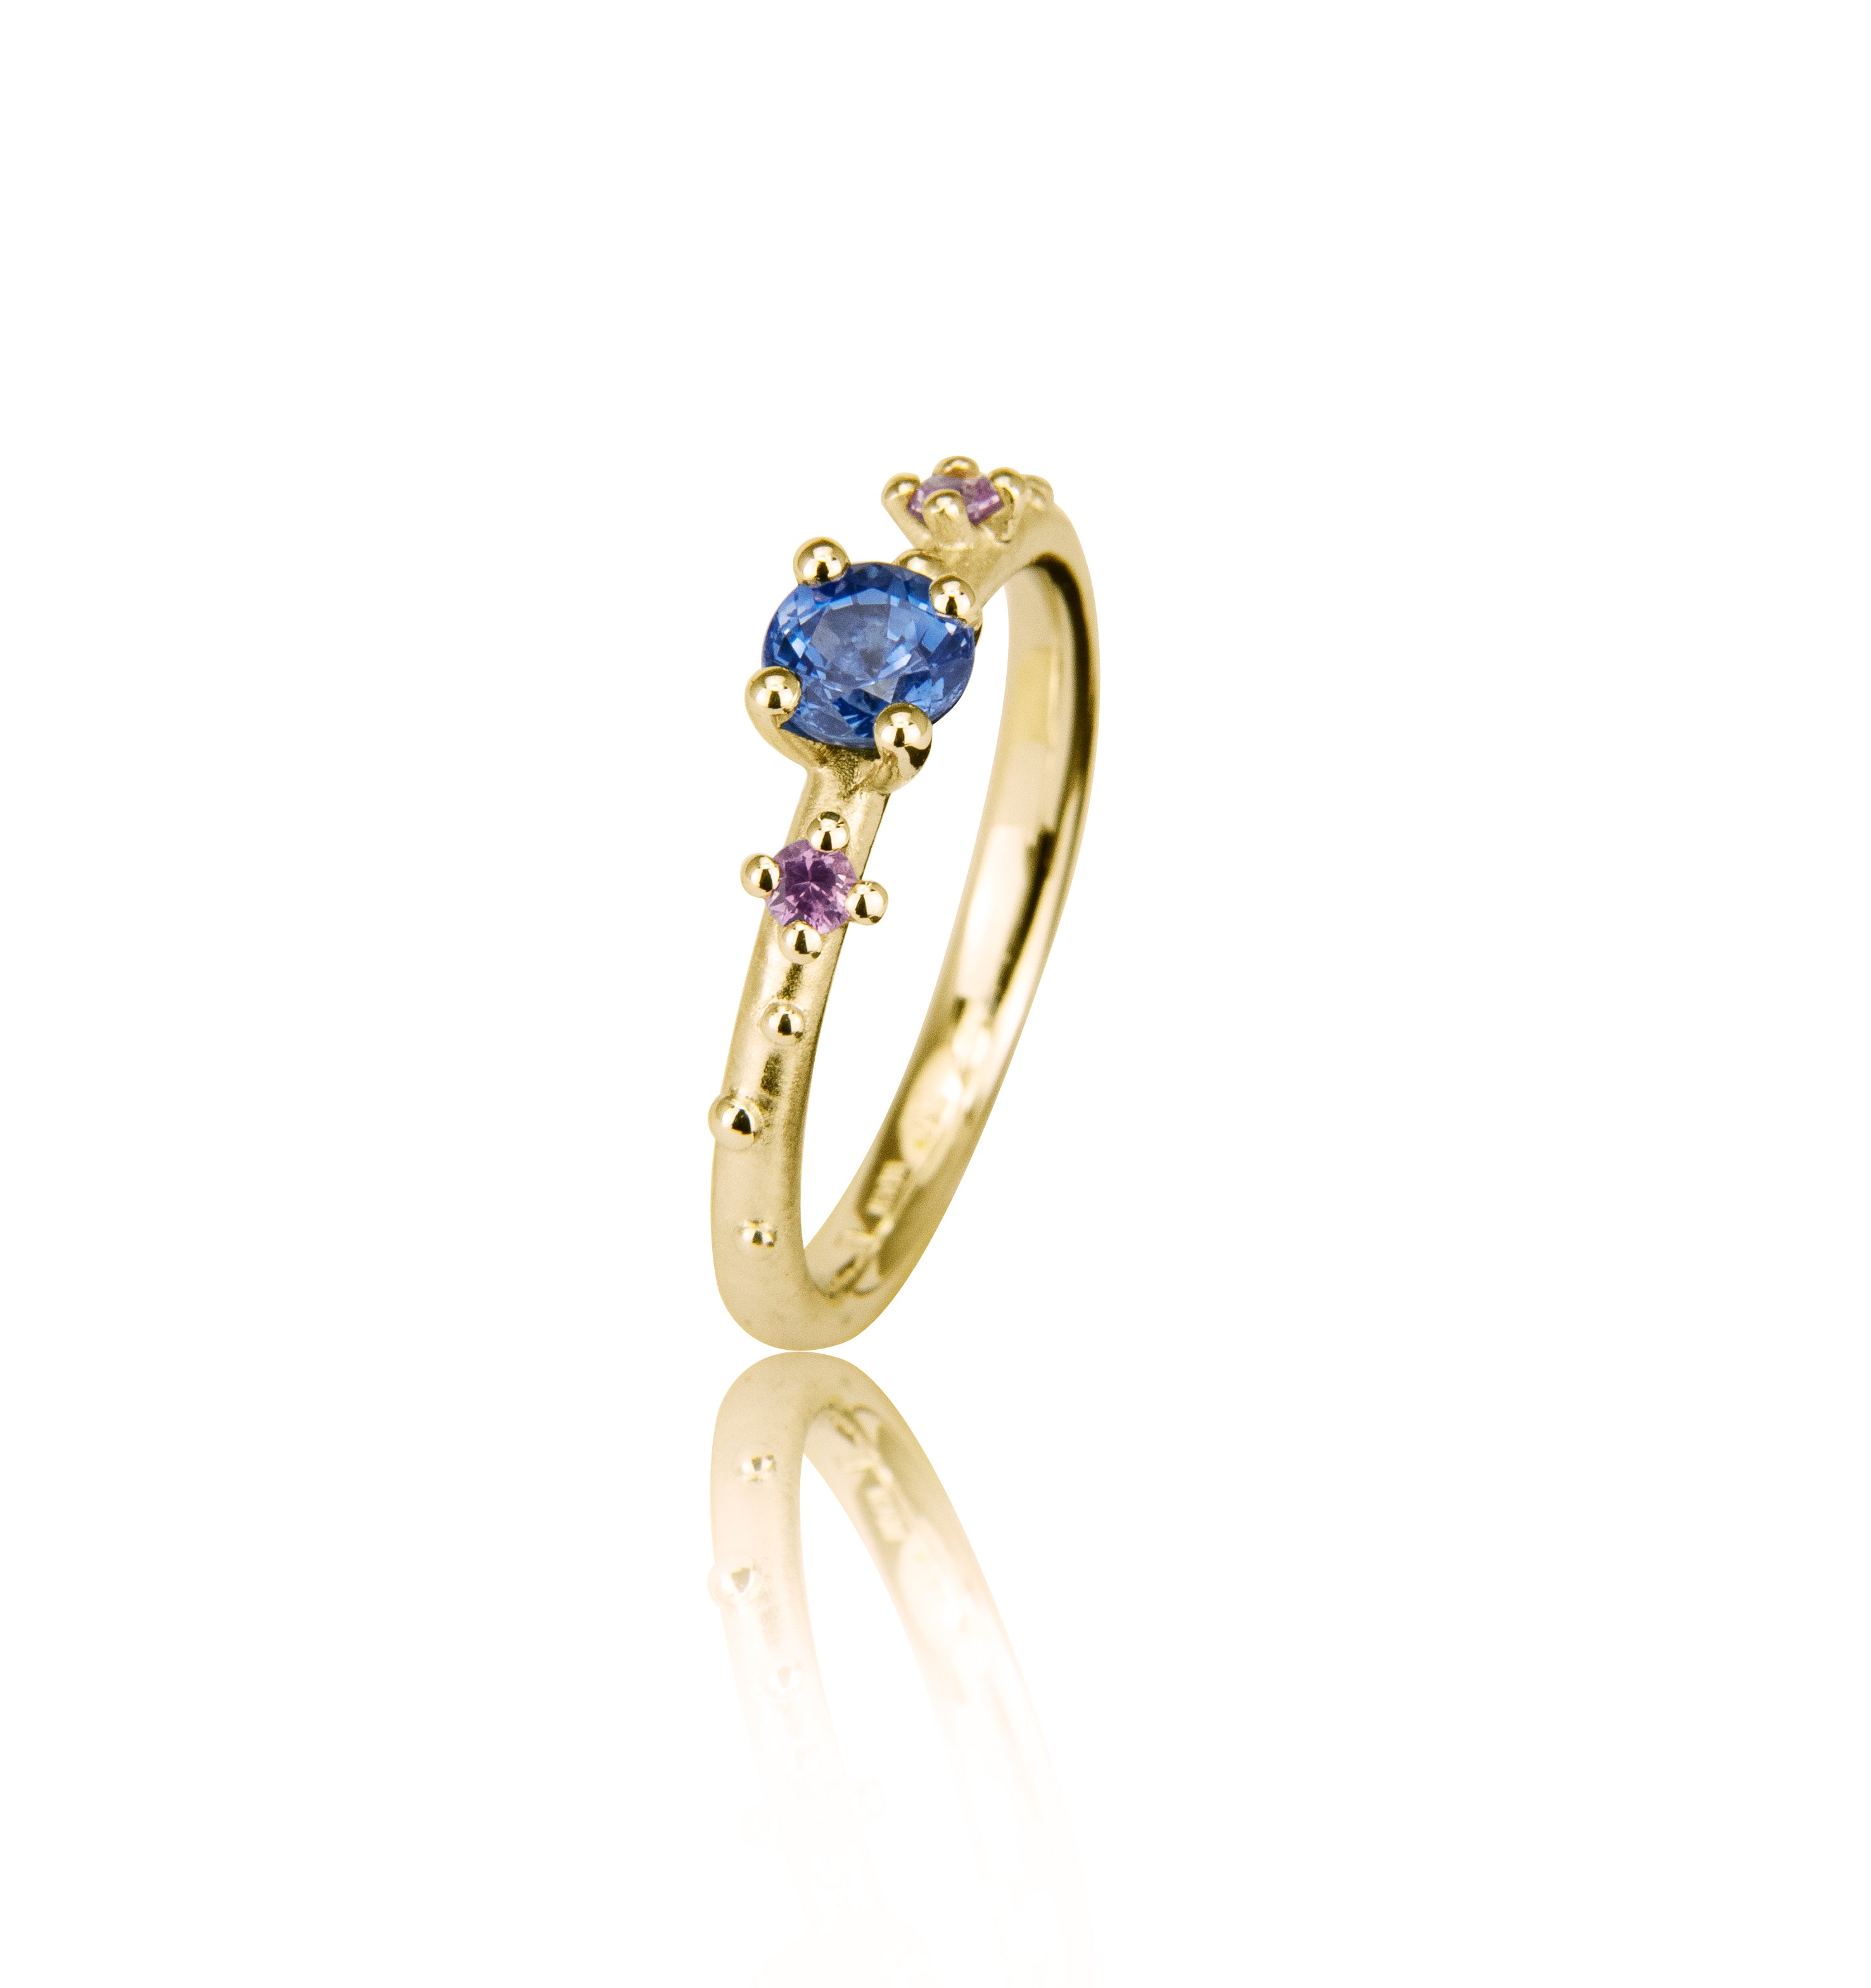 Shine-ring "Blå" i guld med safirer